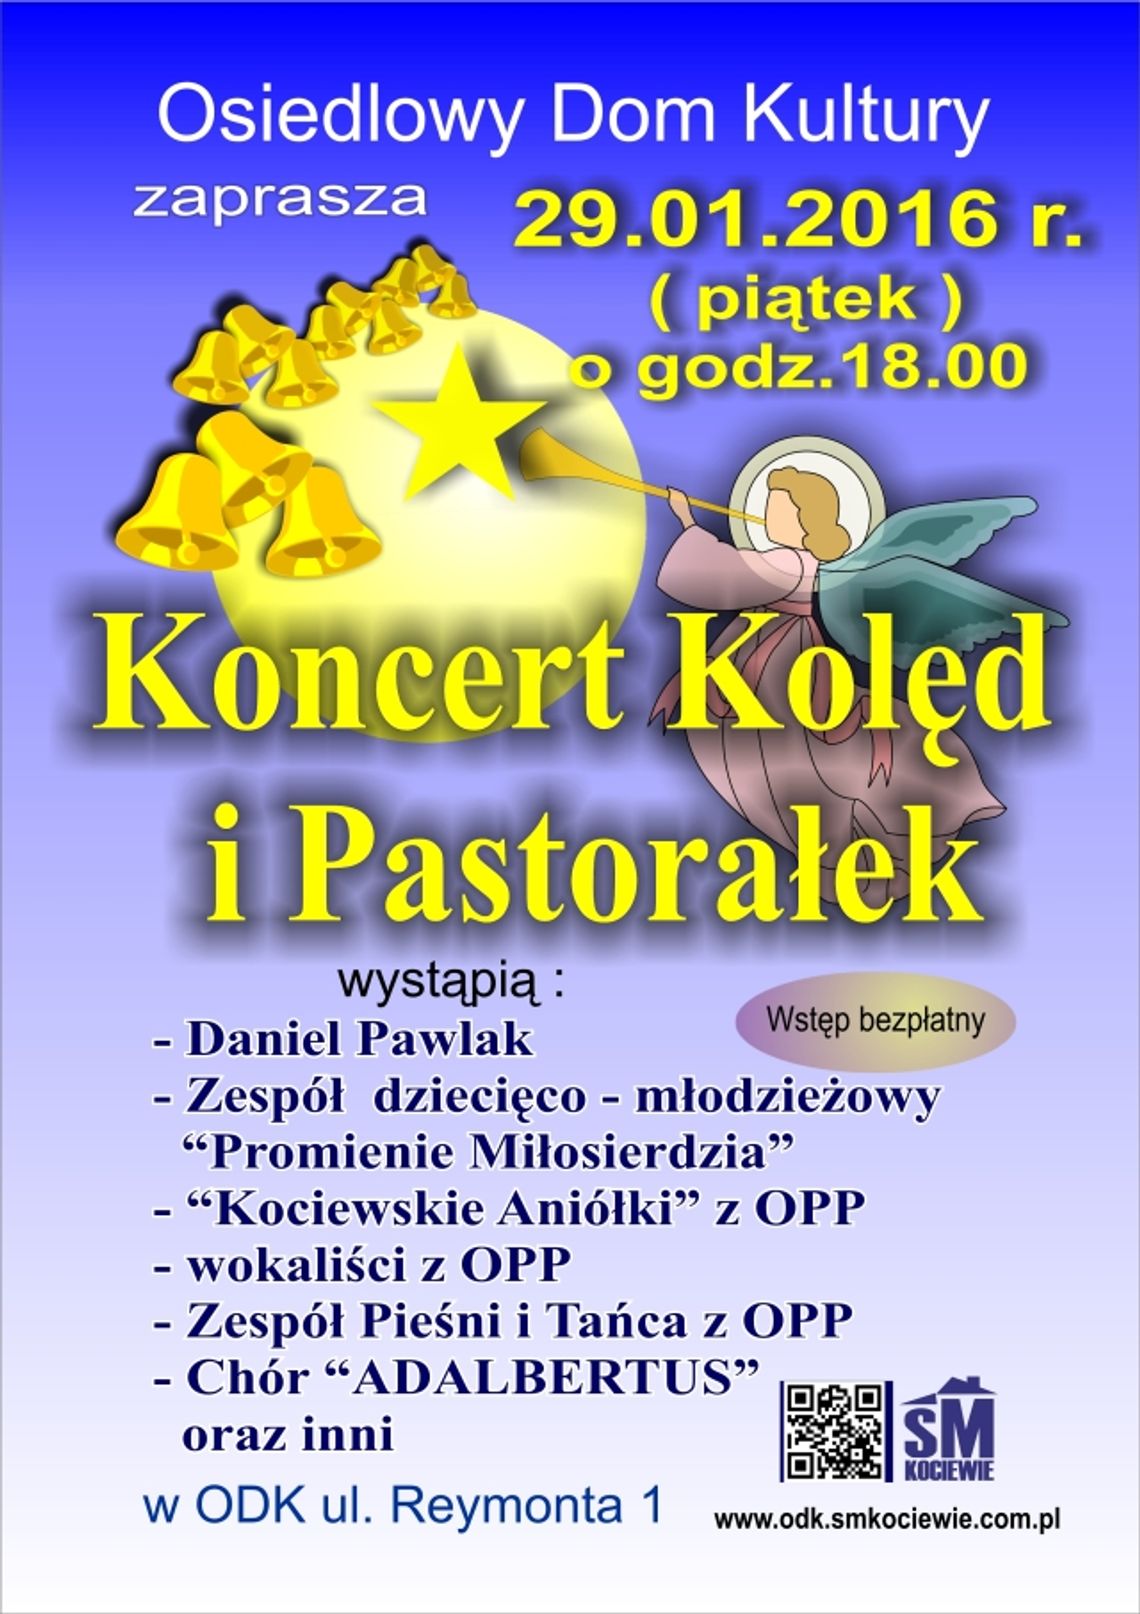 Wyjątkowy Koncert Kolęd i Pastorałek. Już za tydzień! 